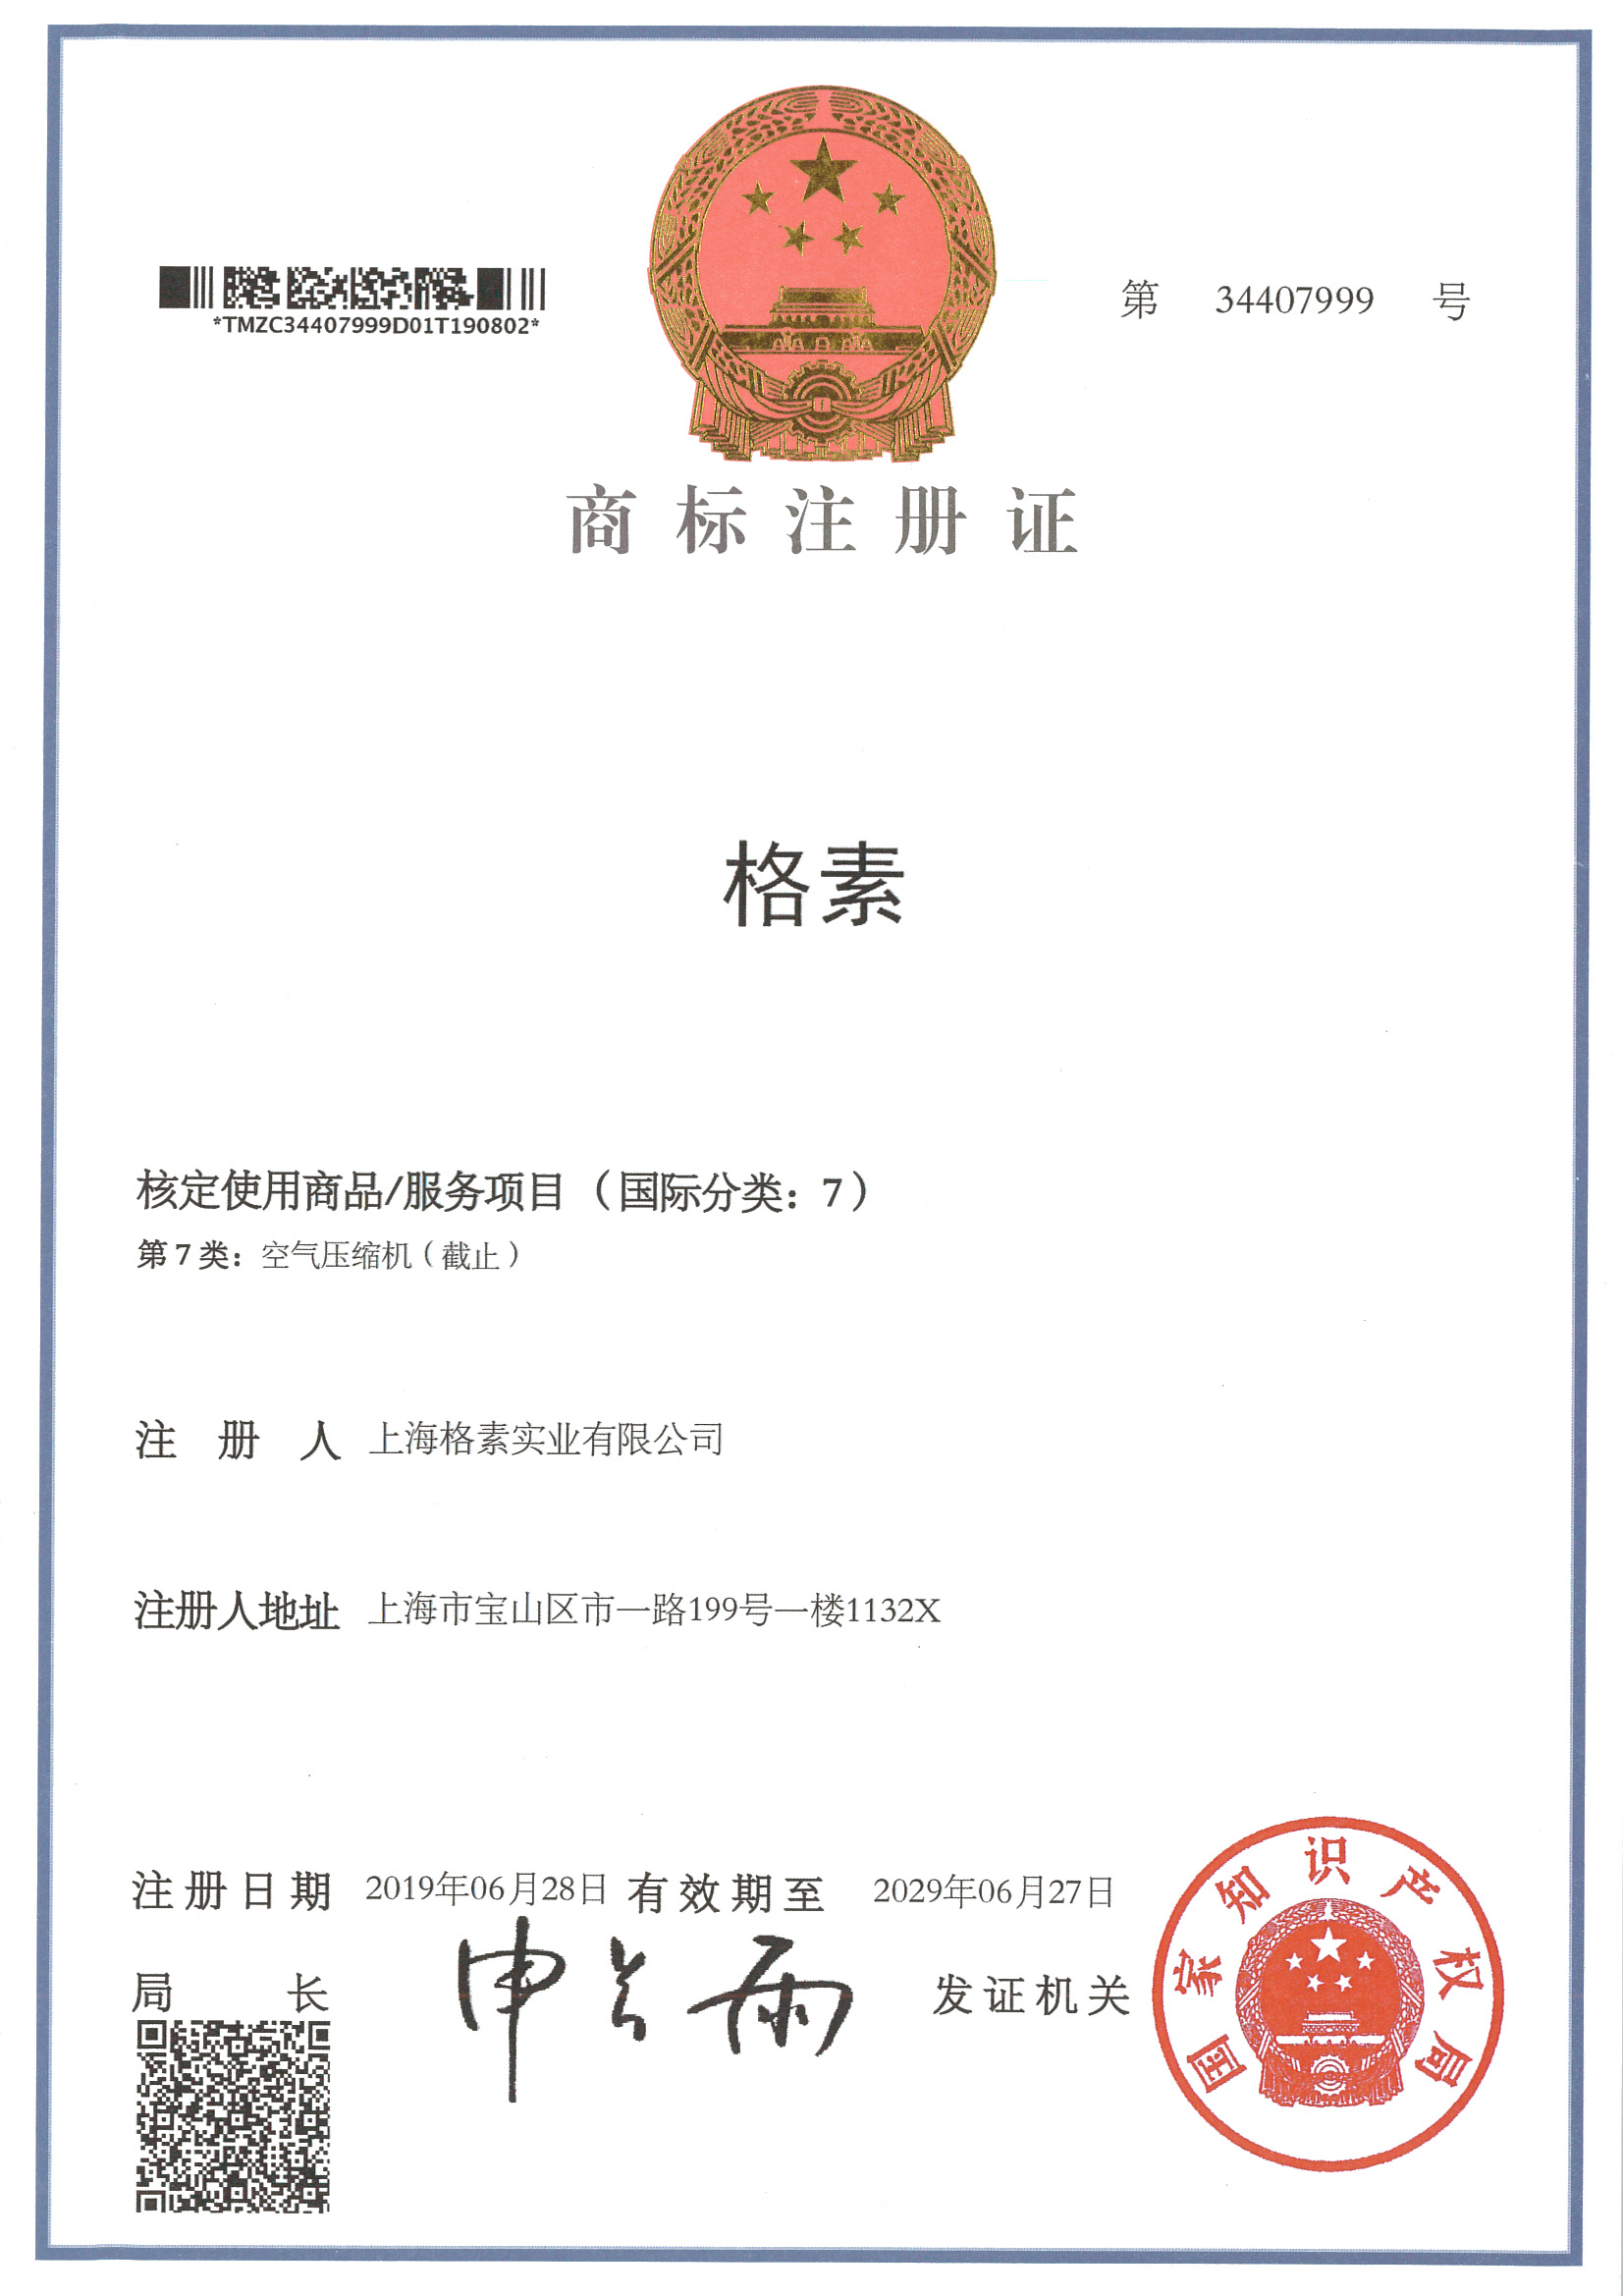 格素中文商标证